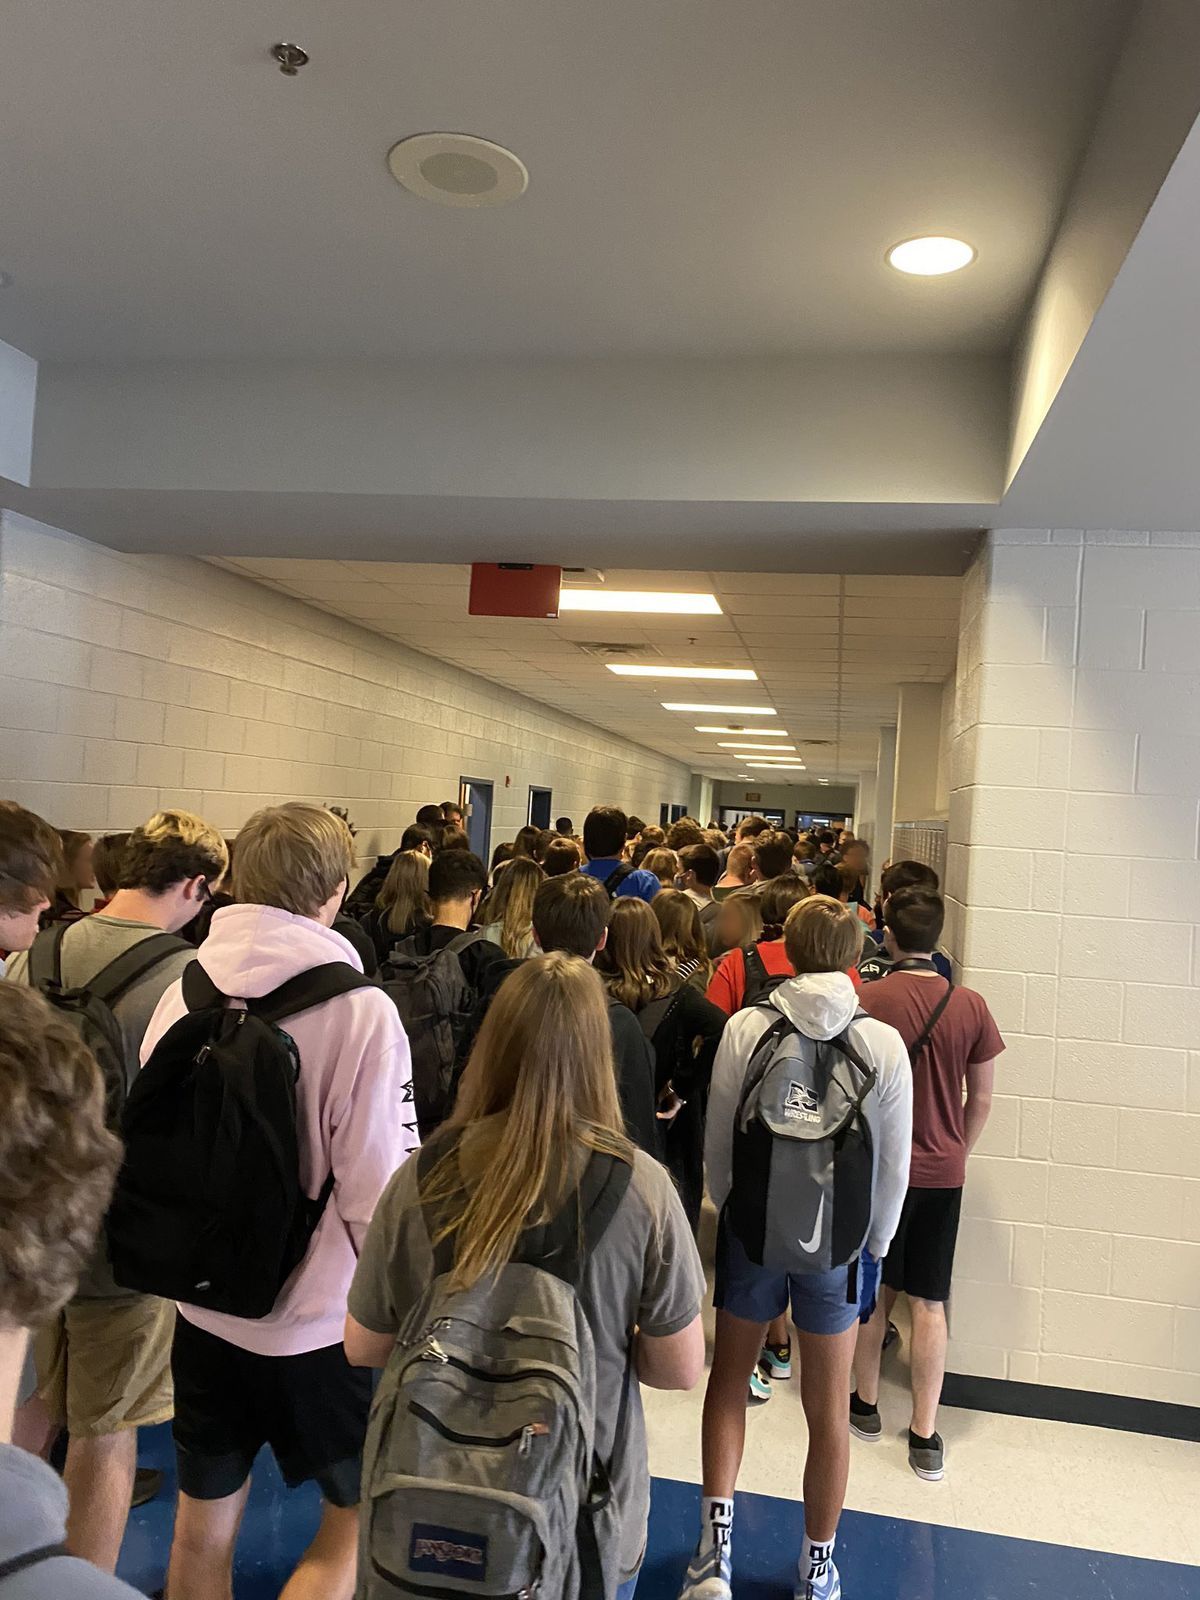 Oppilaat pakataan koulun käytävään